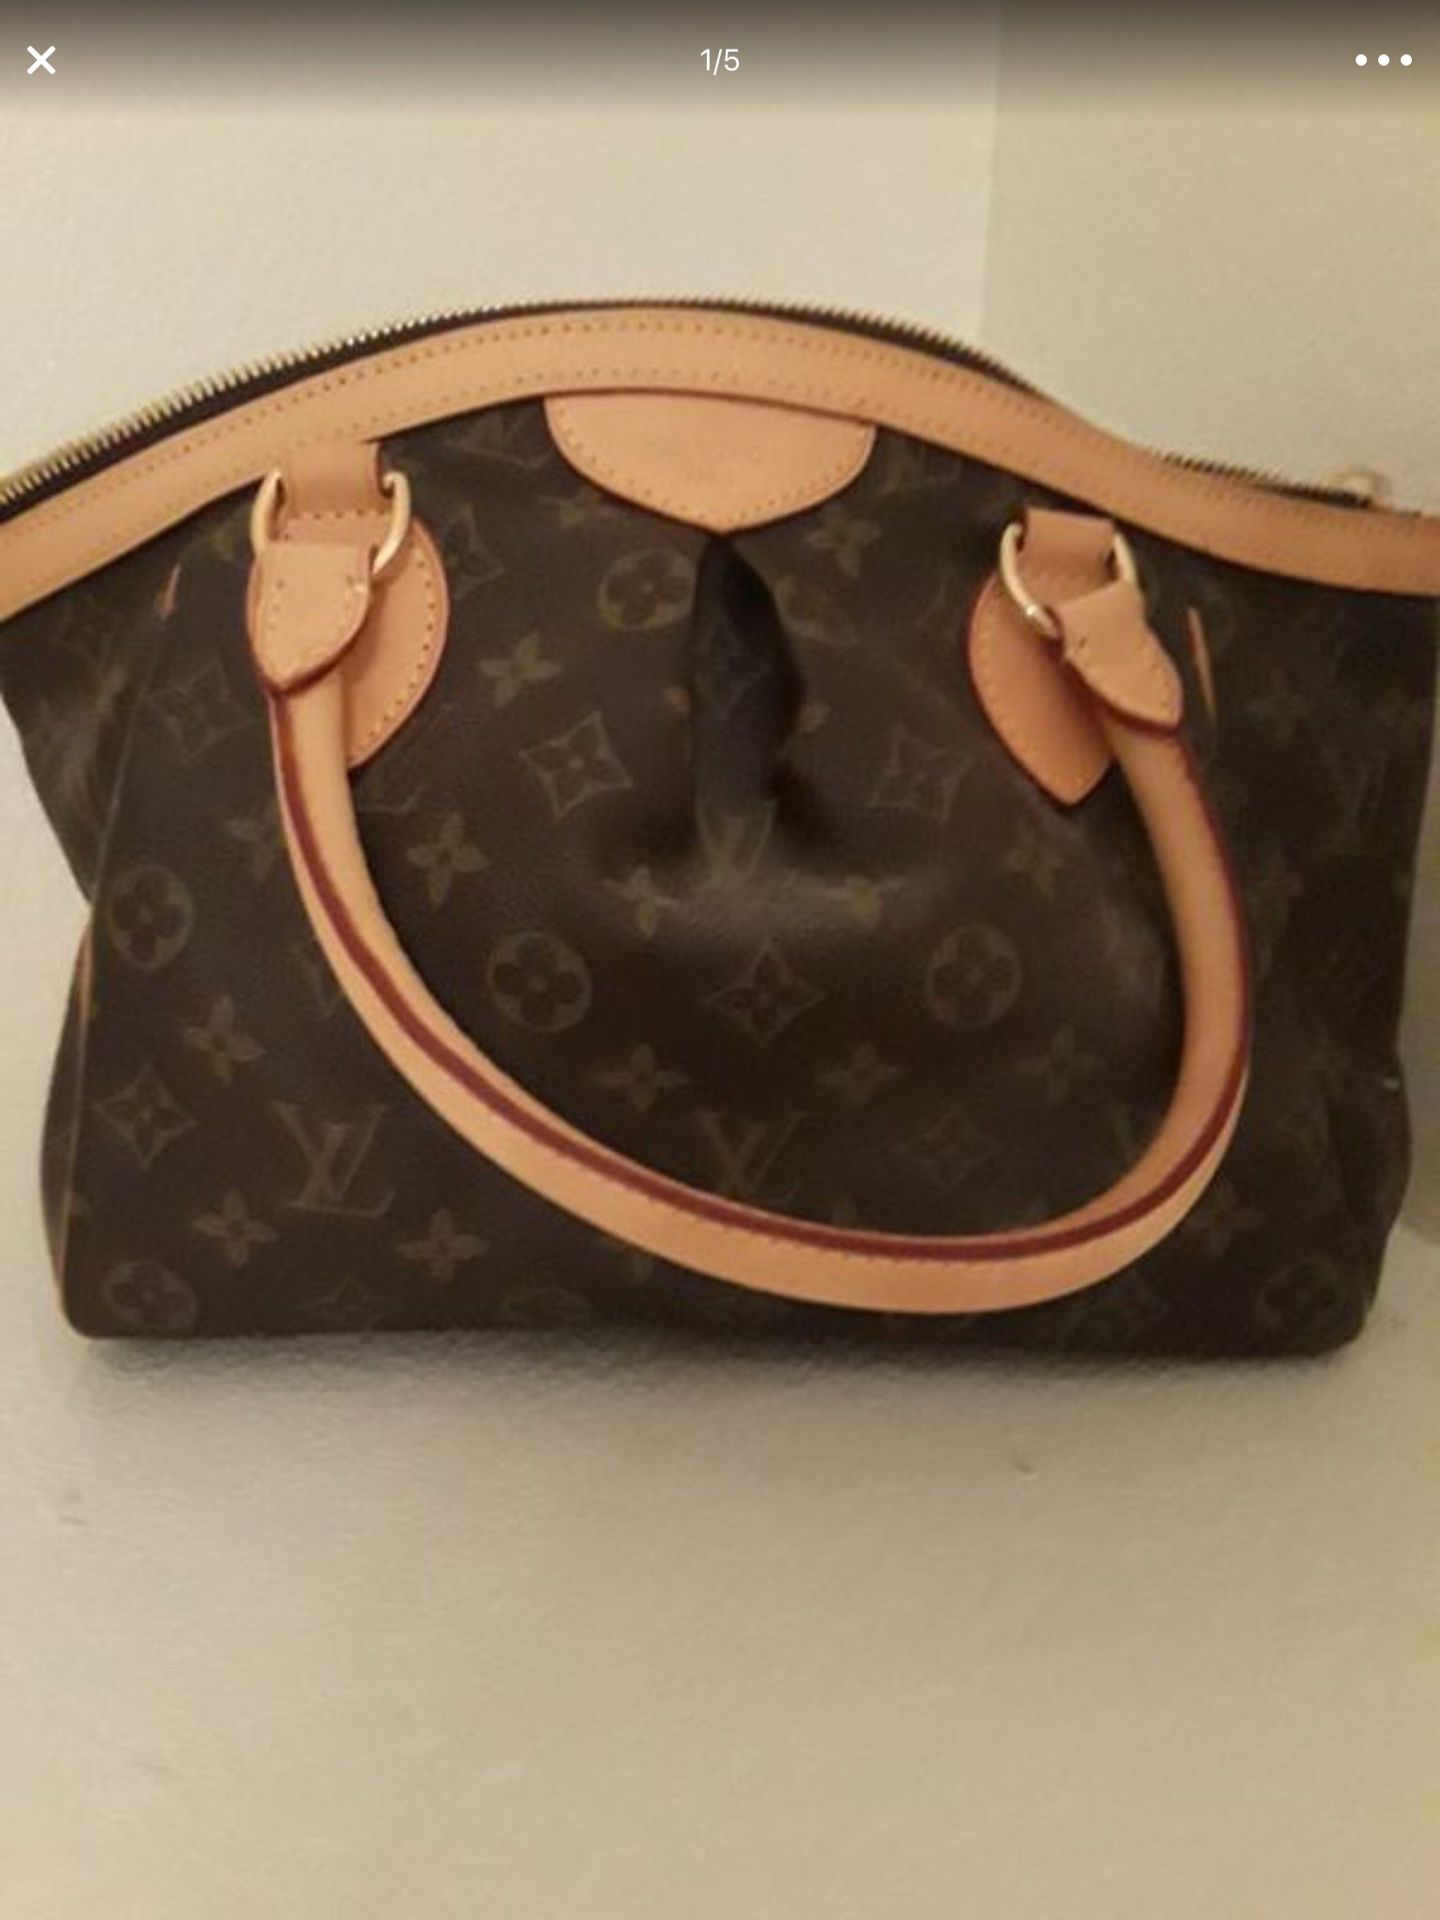 authentic lv purse